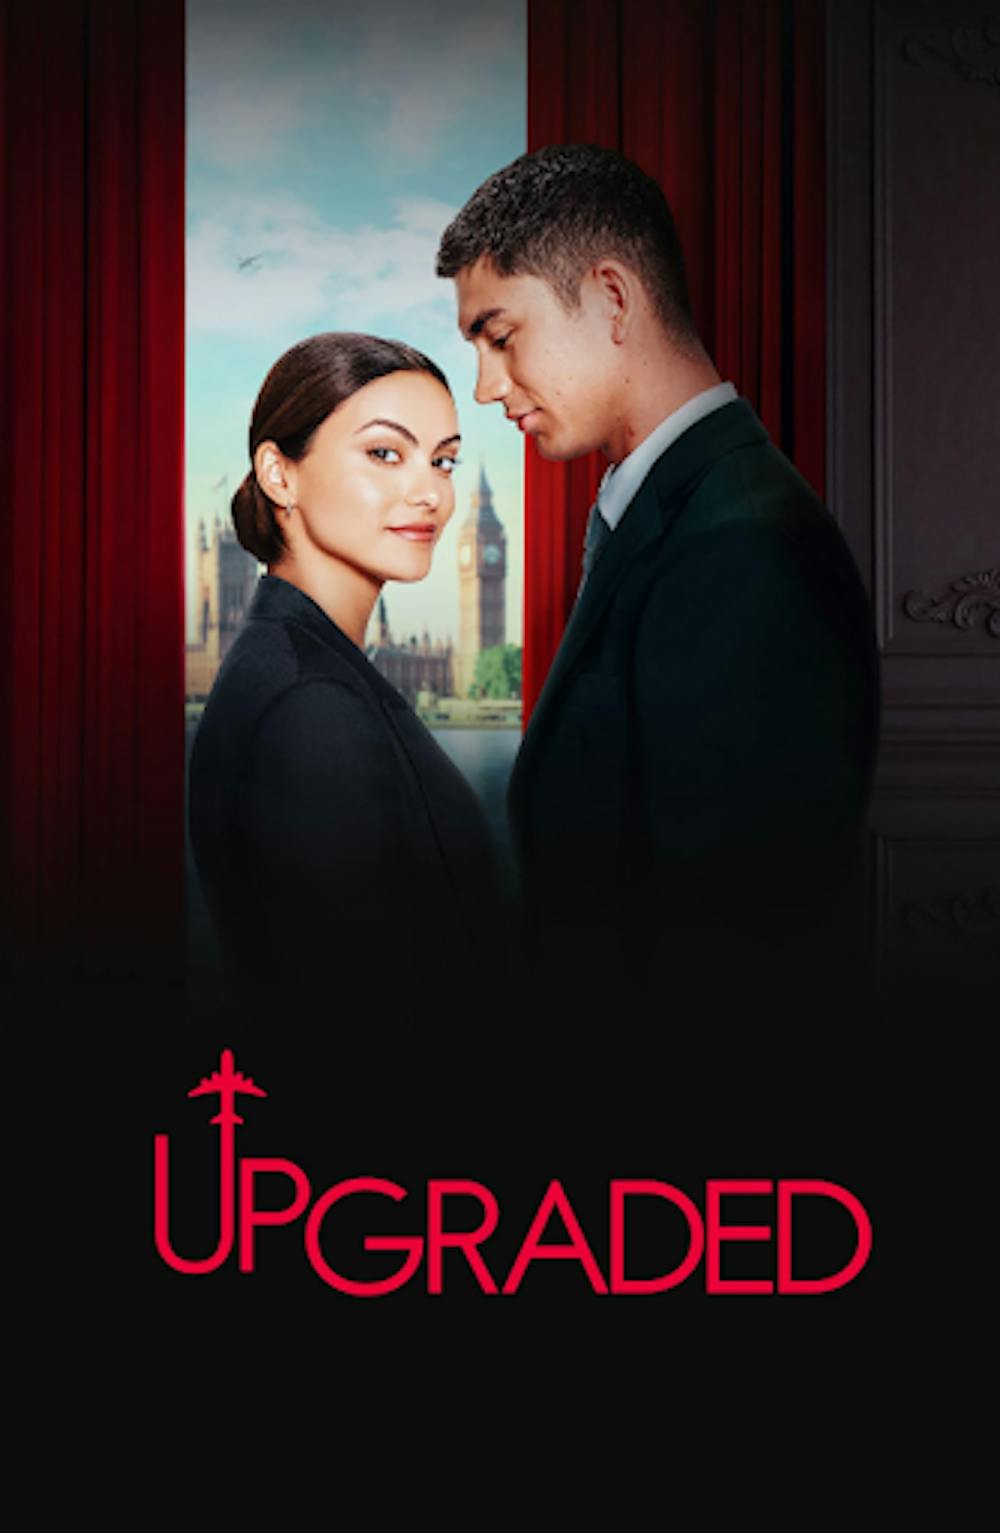 <p><em>“Upgraded” offers nothing new or revolutionary to romantic comedy lovers. (Photo courtesy of </em><a href="https://www.imdb.com/title/tt21830902/?ref_=tt_mv_close" target=""><em>IMDb</em></a><em>)<br/><br/></em></p>